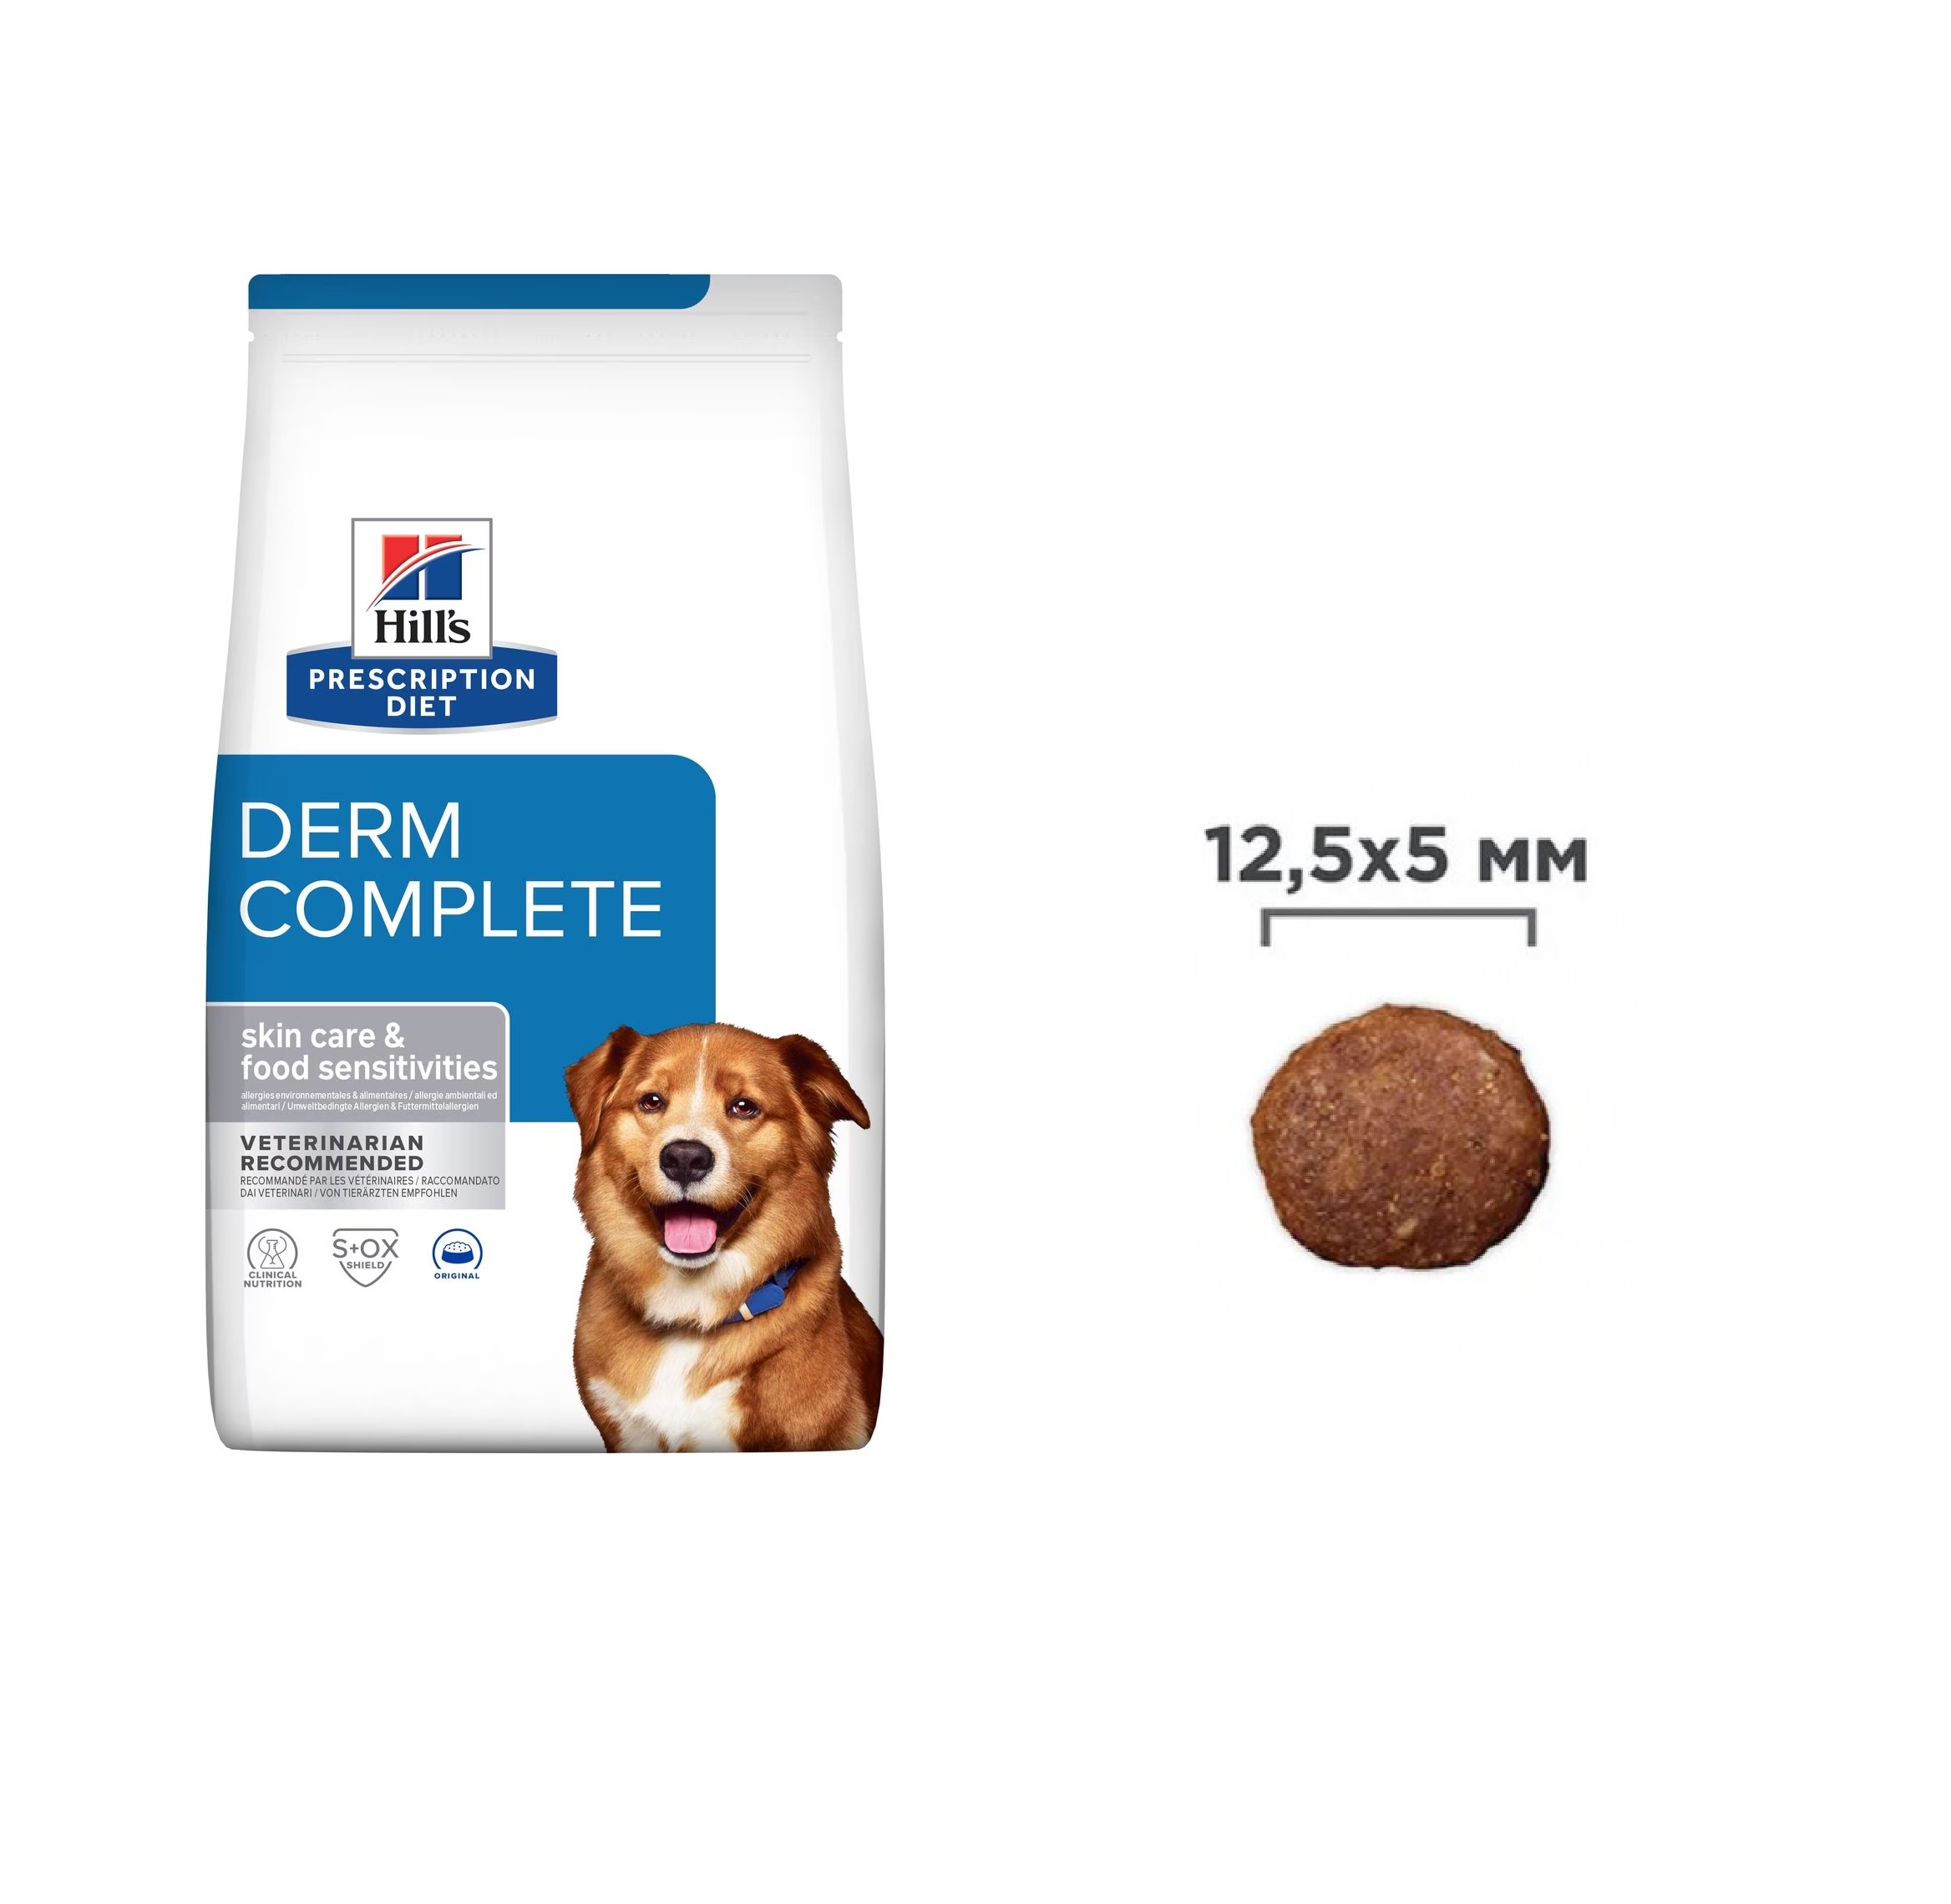 Хилс для собак Диета Derm Complete Кожная/Пищевая Аллергия, весовой 1кг (Hill's) + Подарок